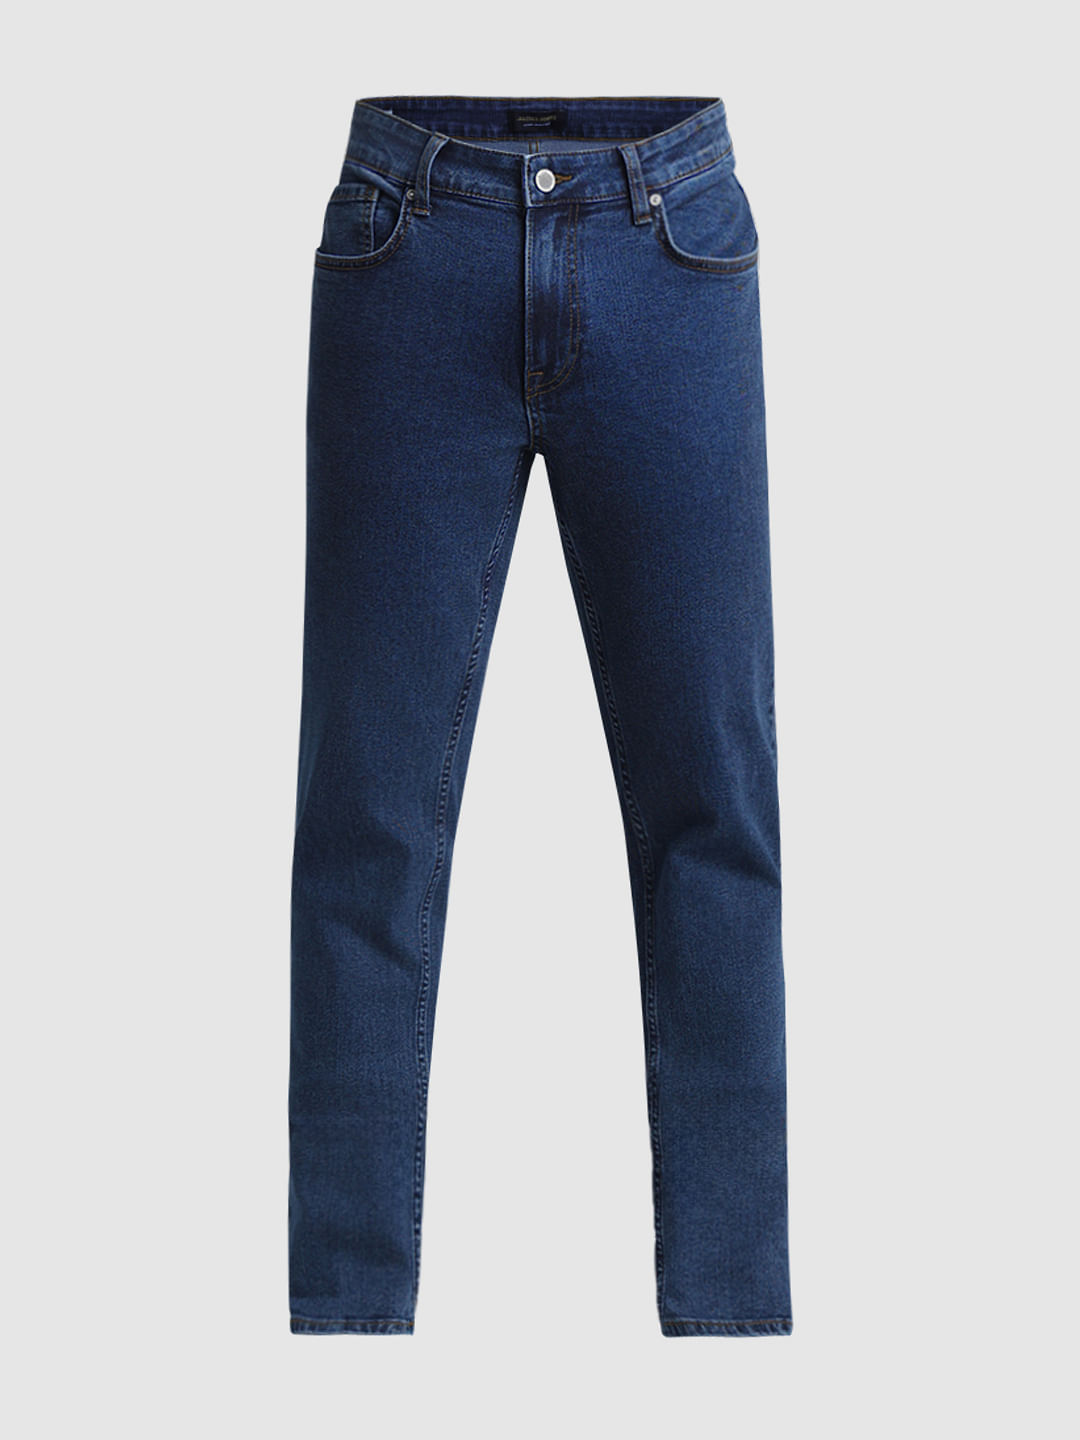 Flare lace light blue jeans pants - Wapas